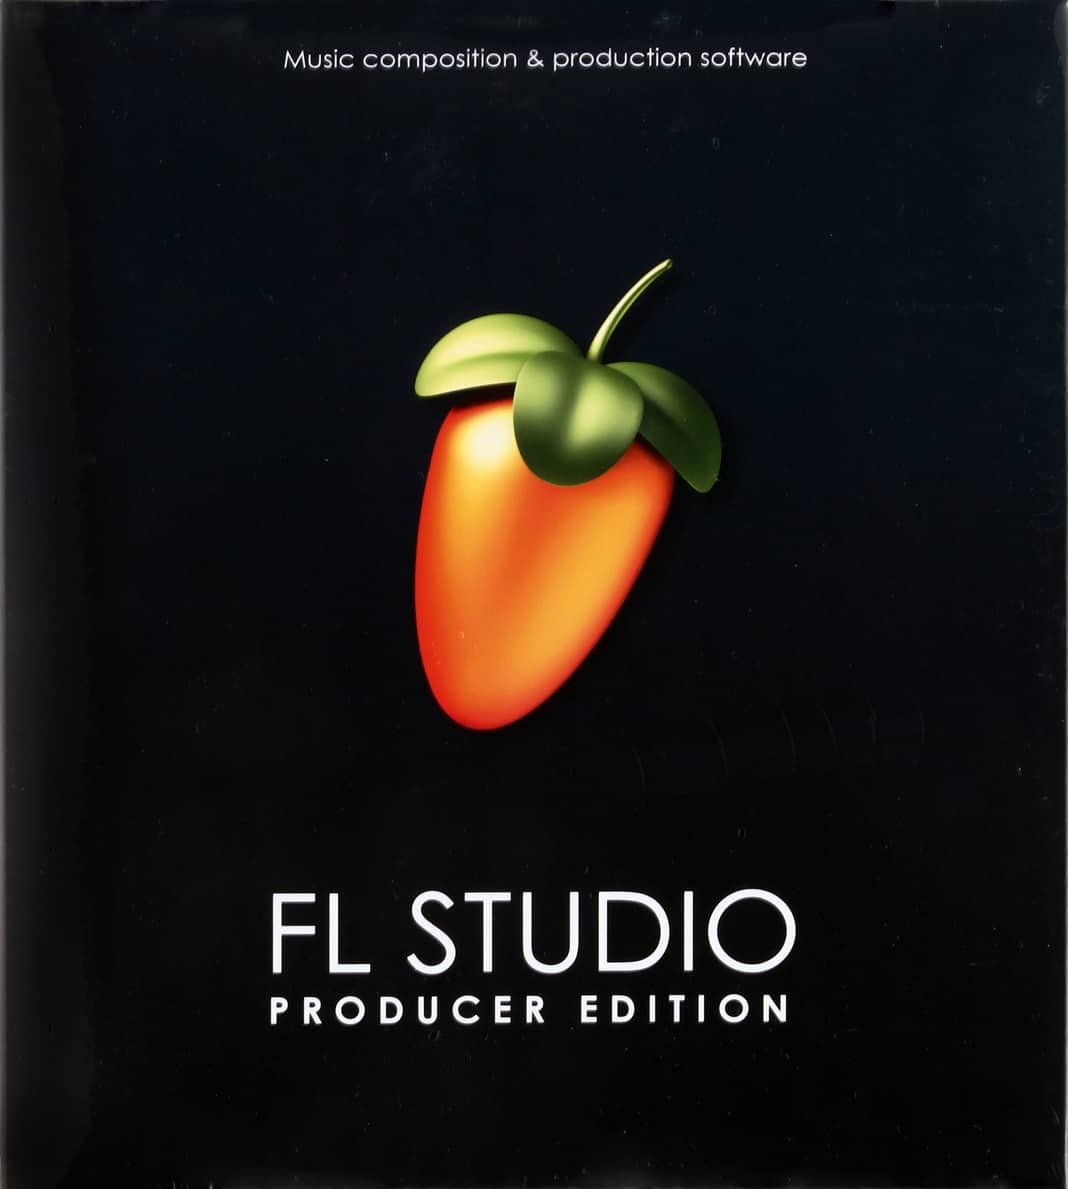 Fl studio demo